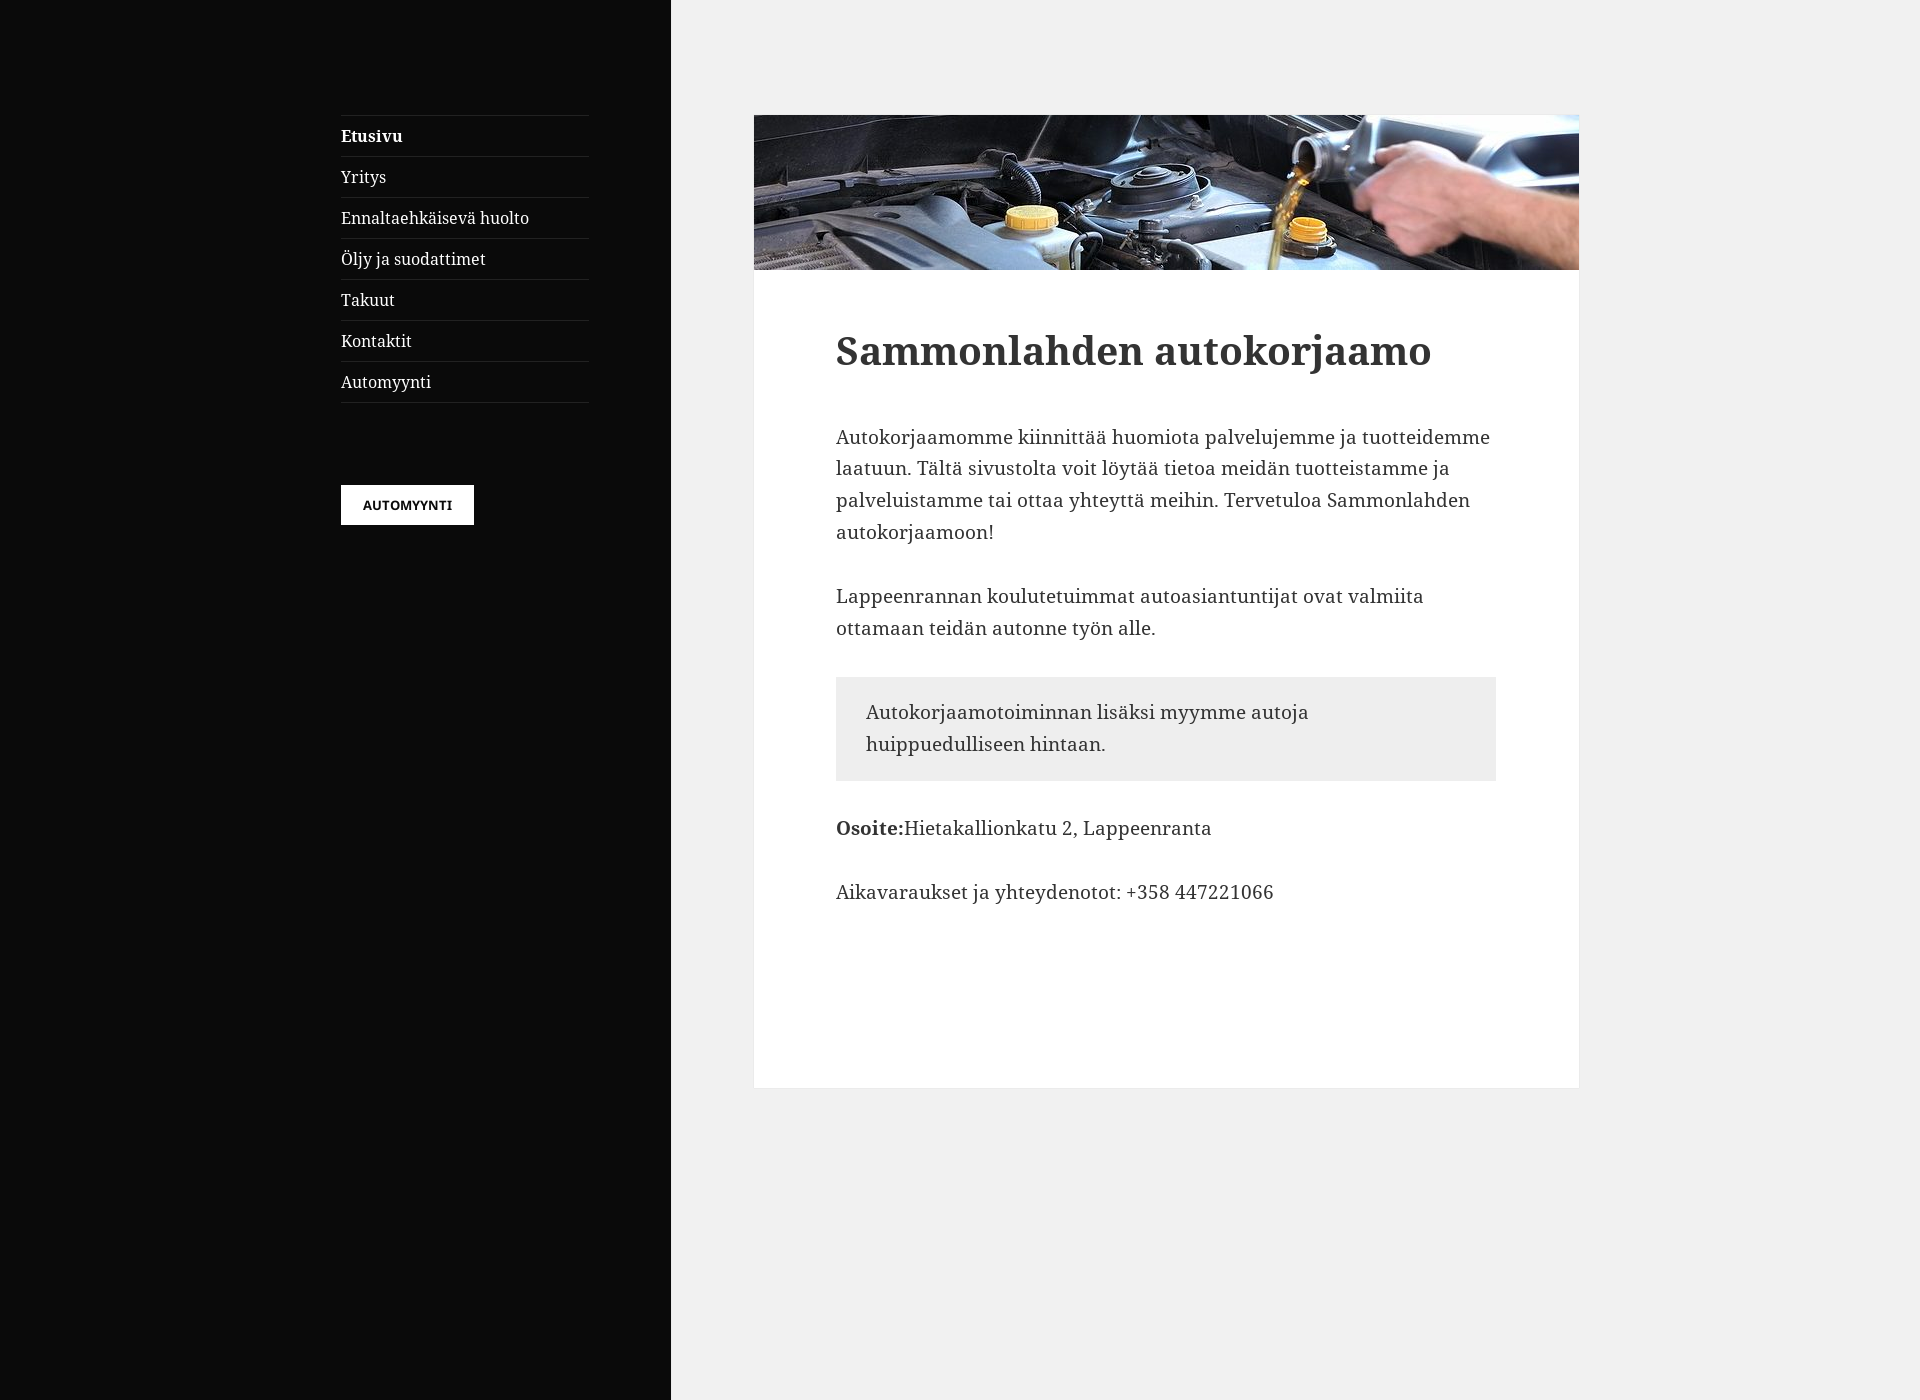 Skärmdump för sammonlahdenak.fi